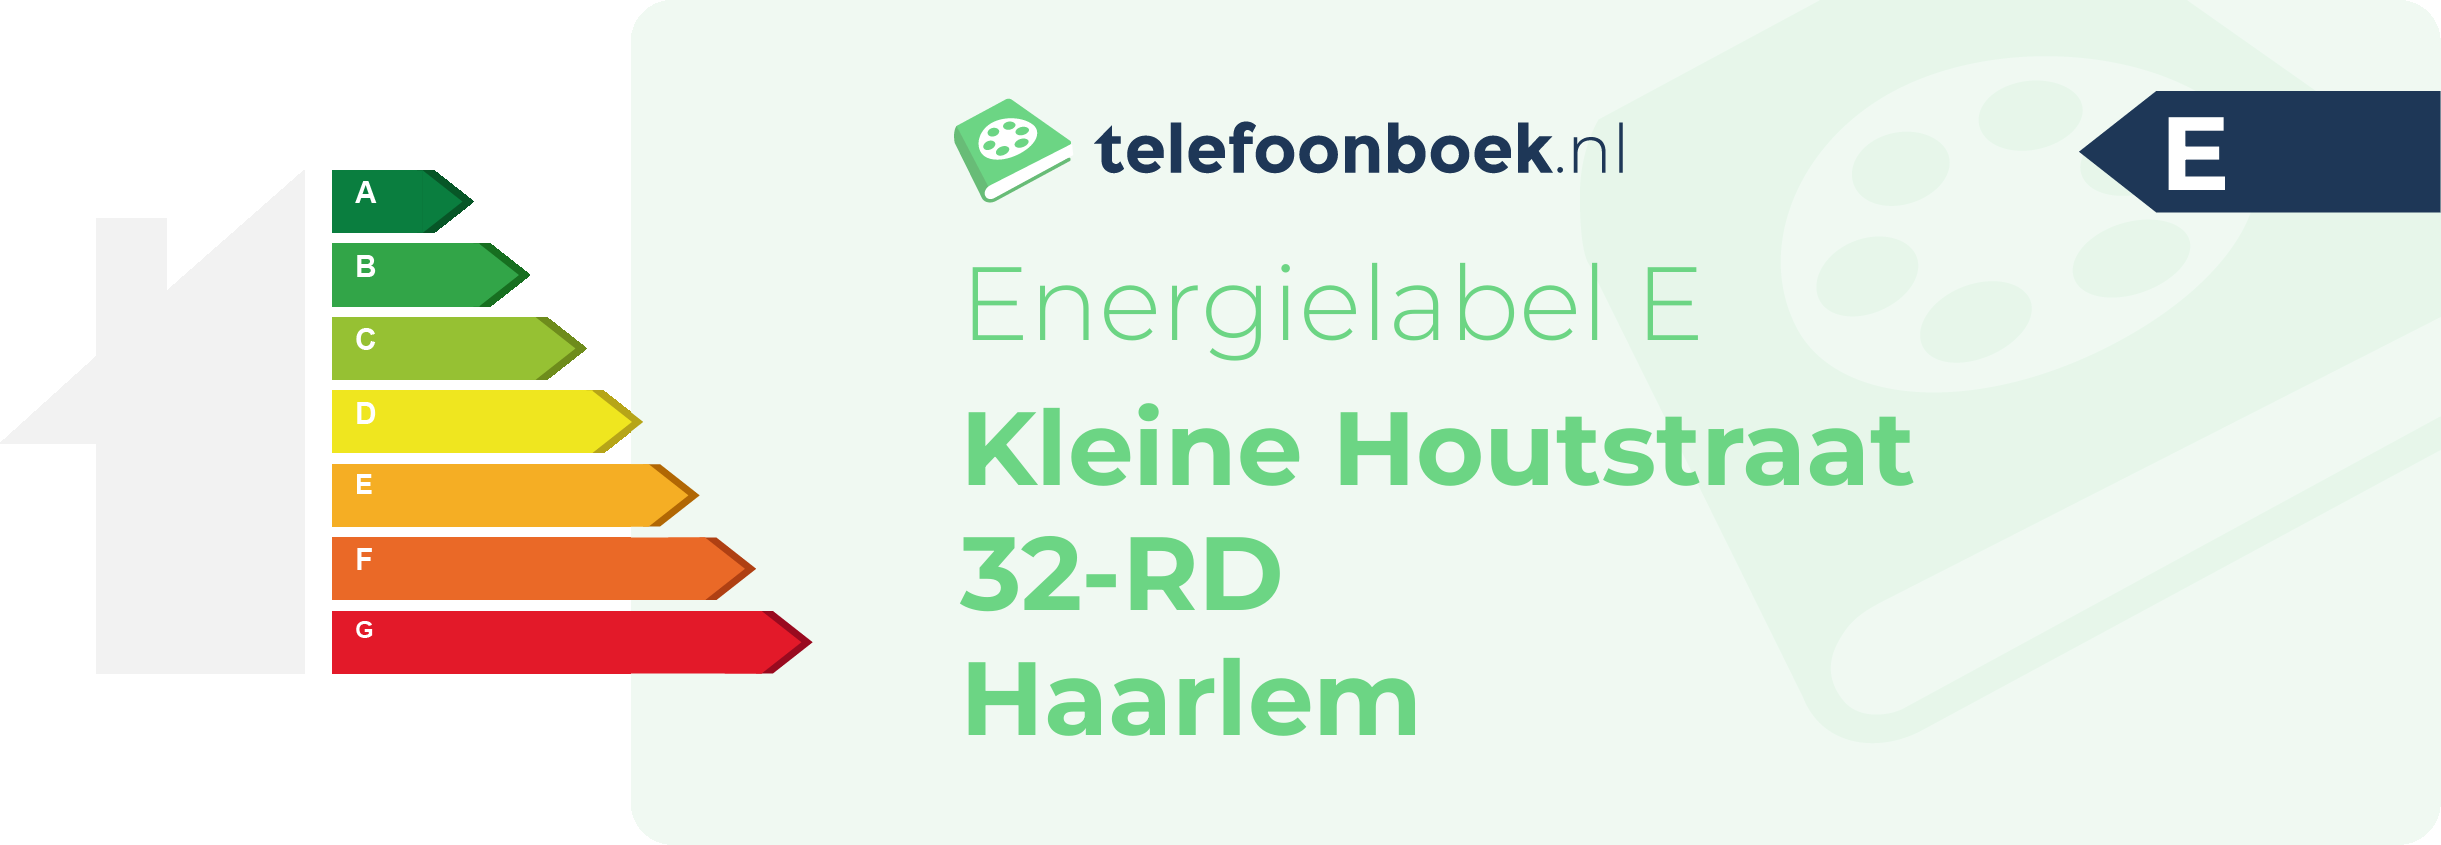 Energielabel Kleine Houtstraat 32-RD Haarlem